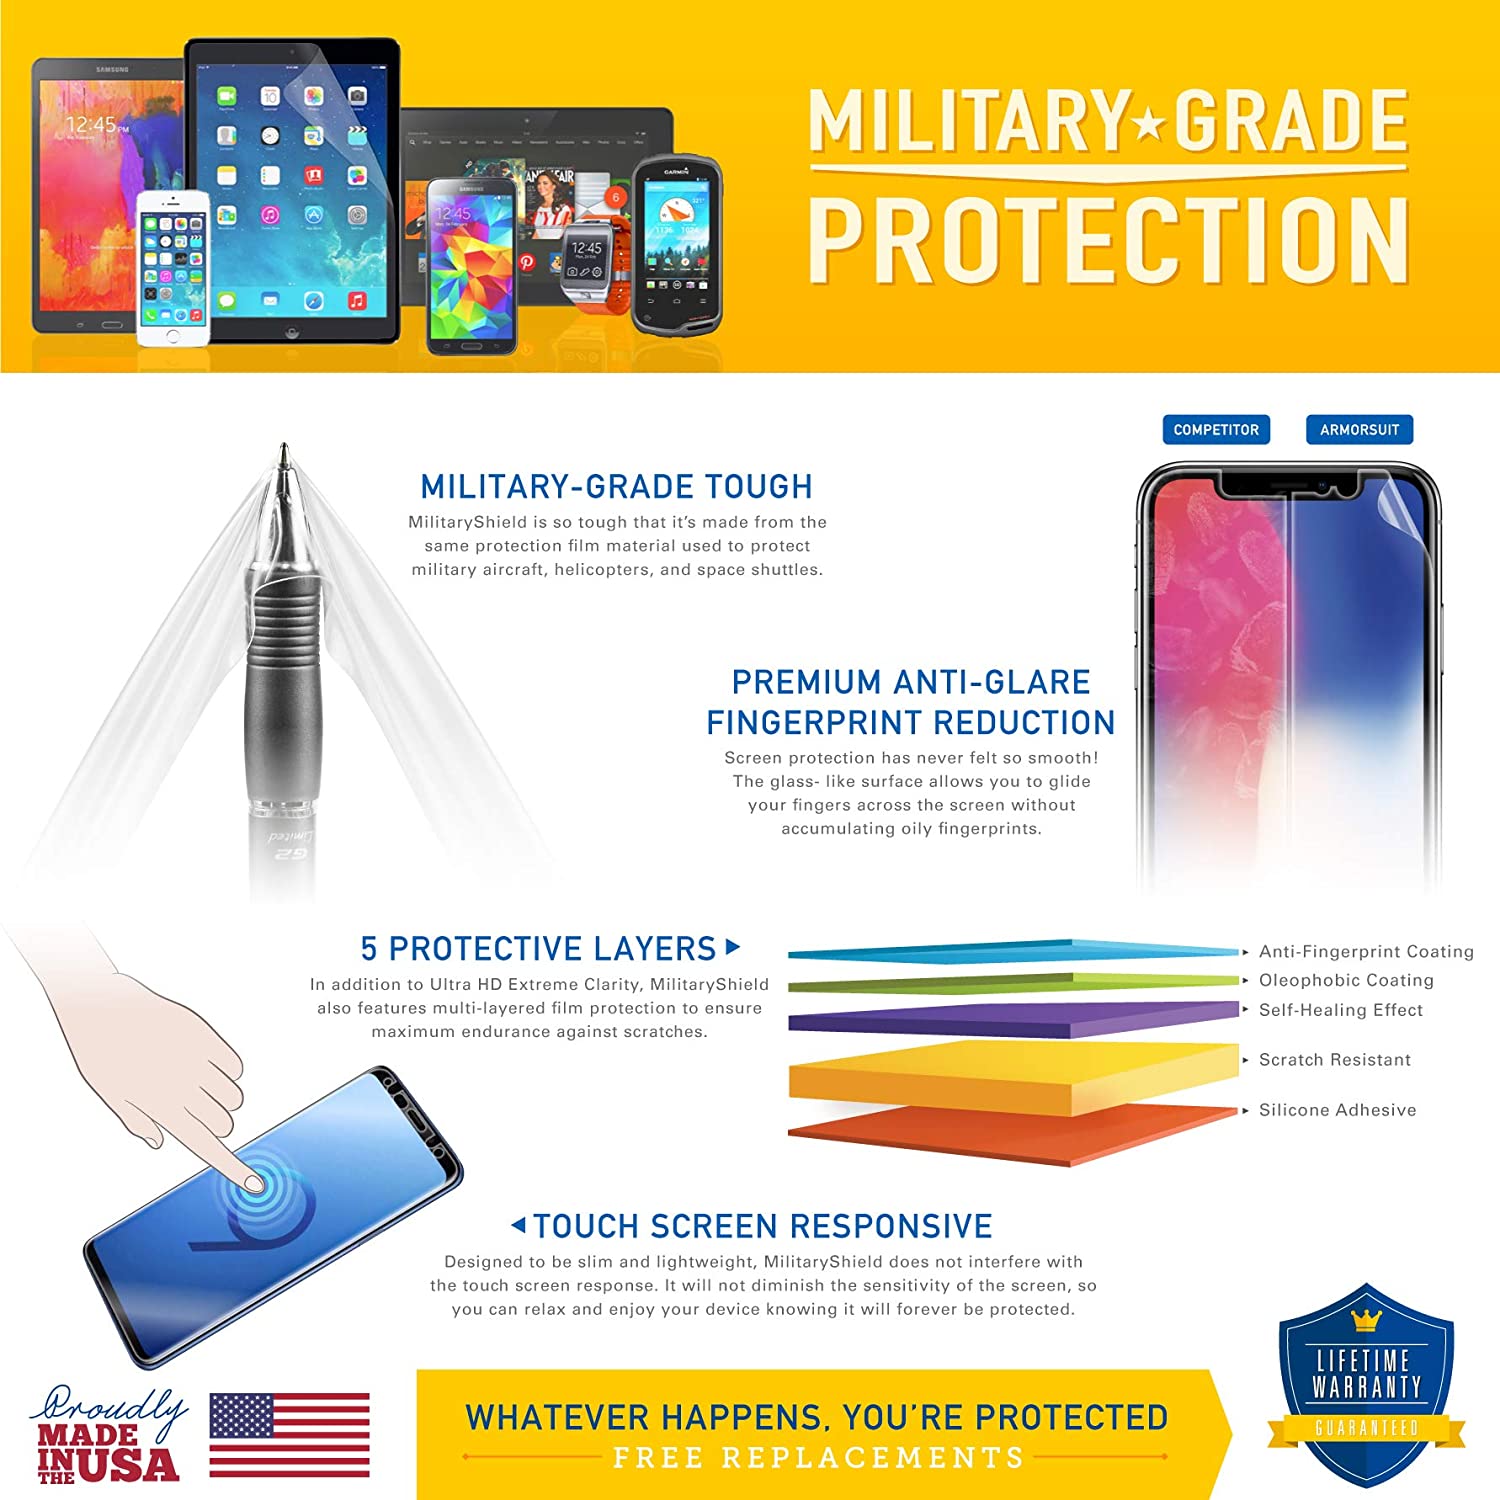 [2 Pack] Nokia N85 Screen Protector